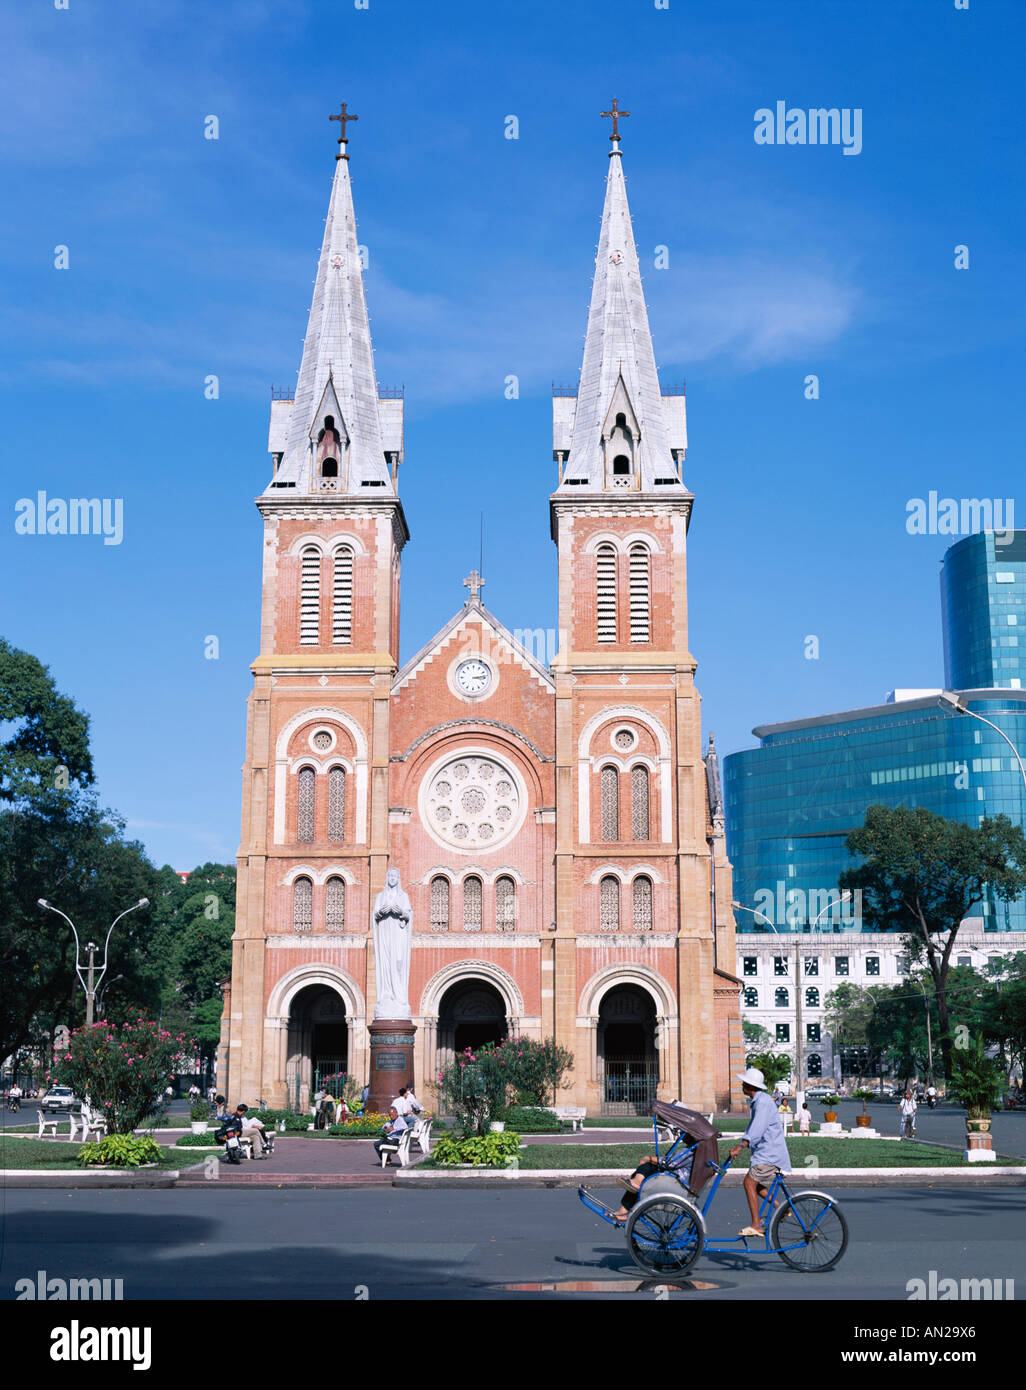 La Cathédrale Notre Dame, Ho Chi Minh Ville (Saigon), Vietnam Banque D'Images